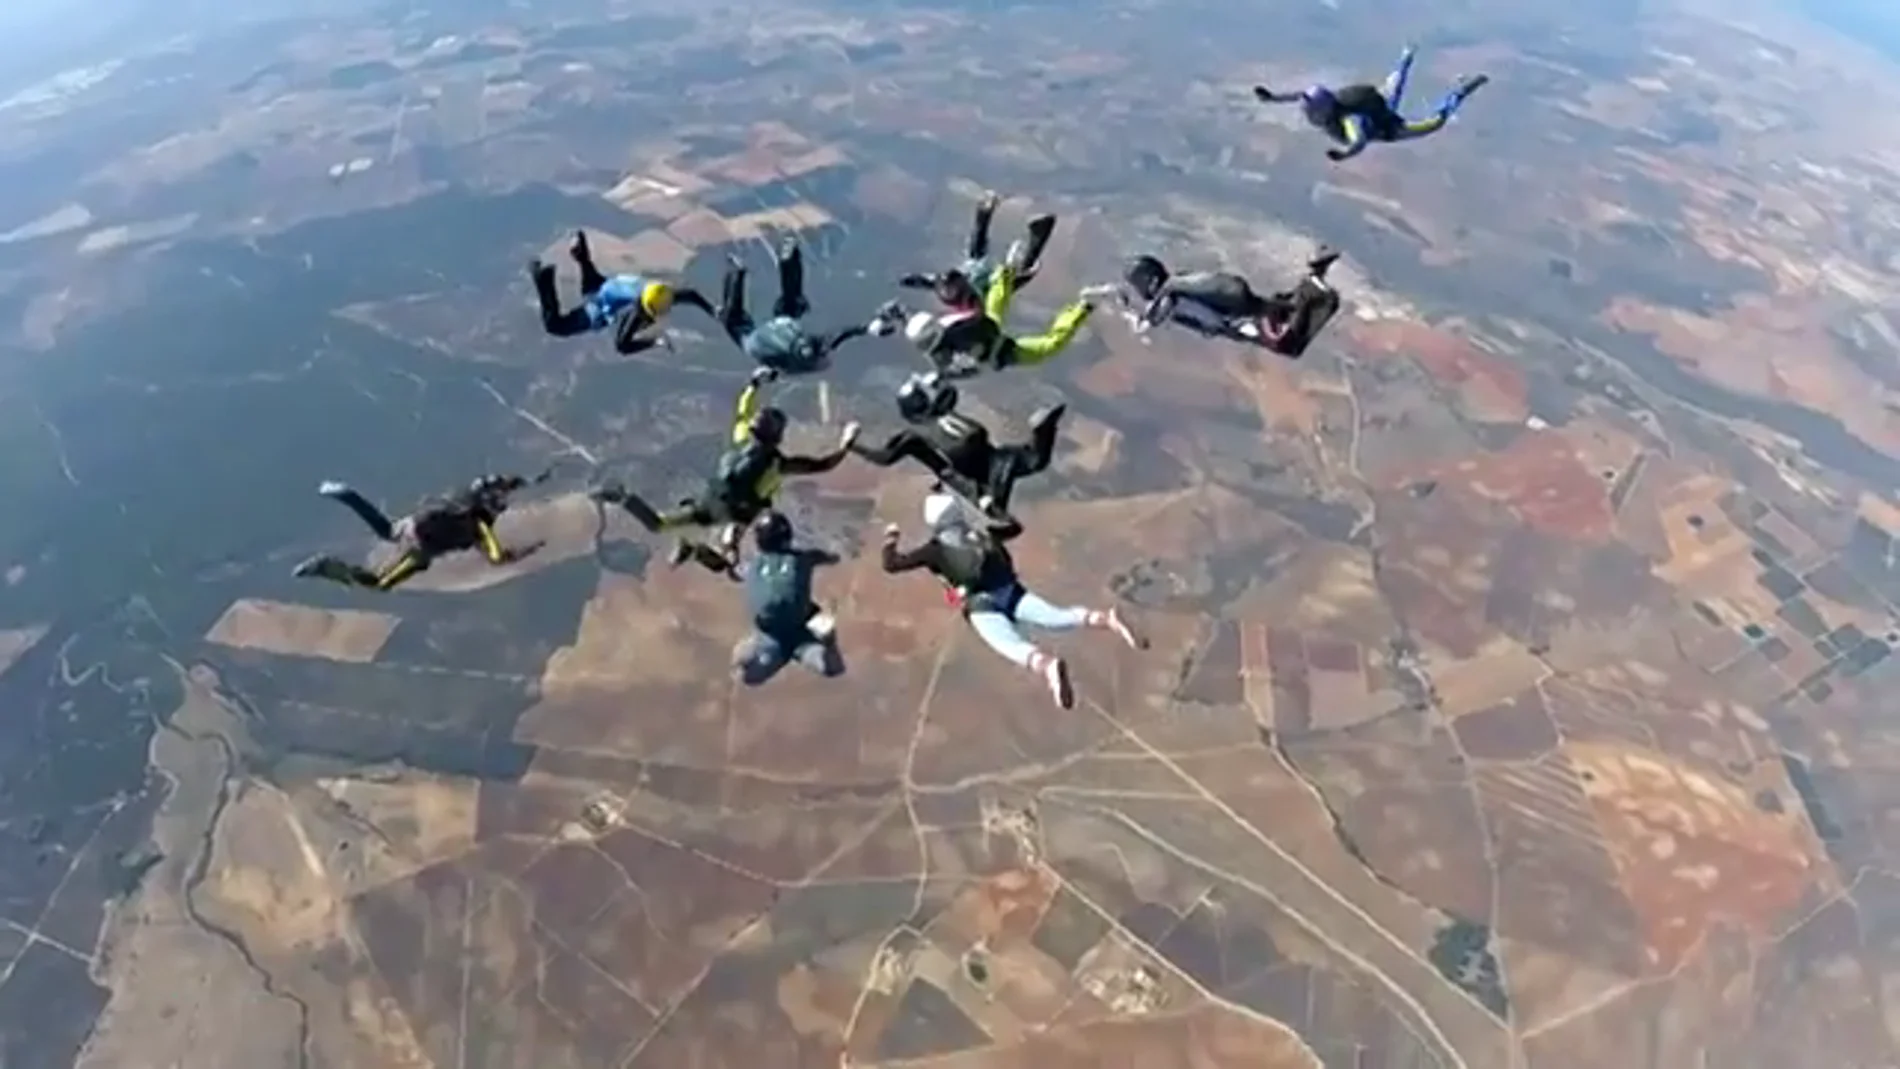 22 mujeres paracaidistas consiguen el récord de España en saltar juntas en formación 